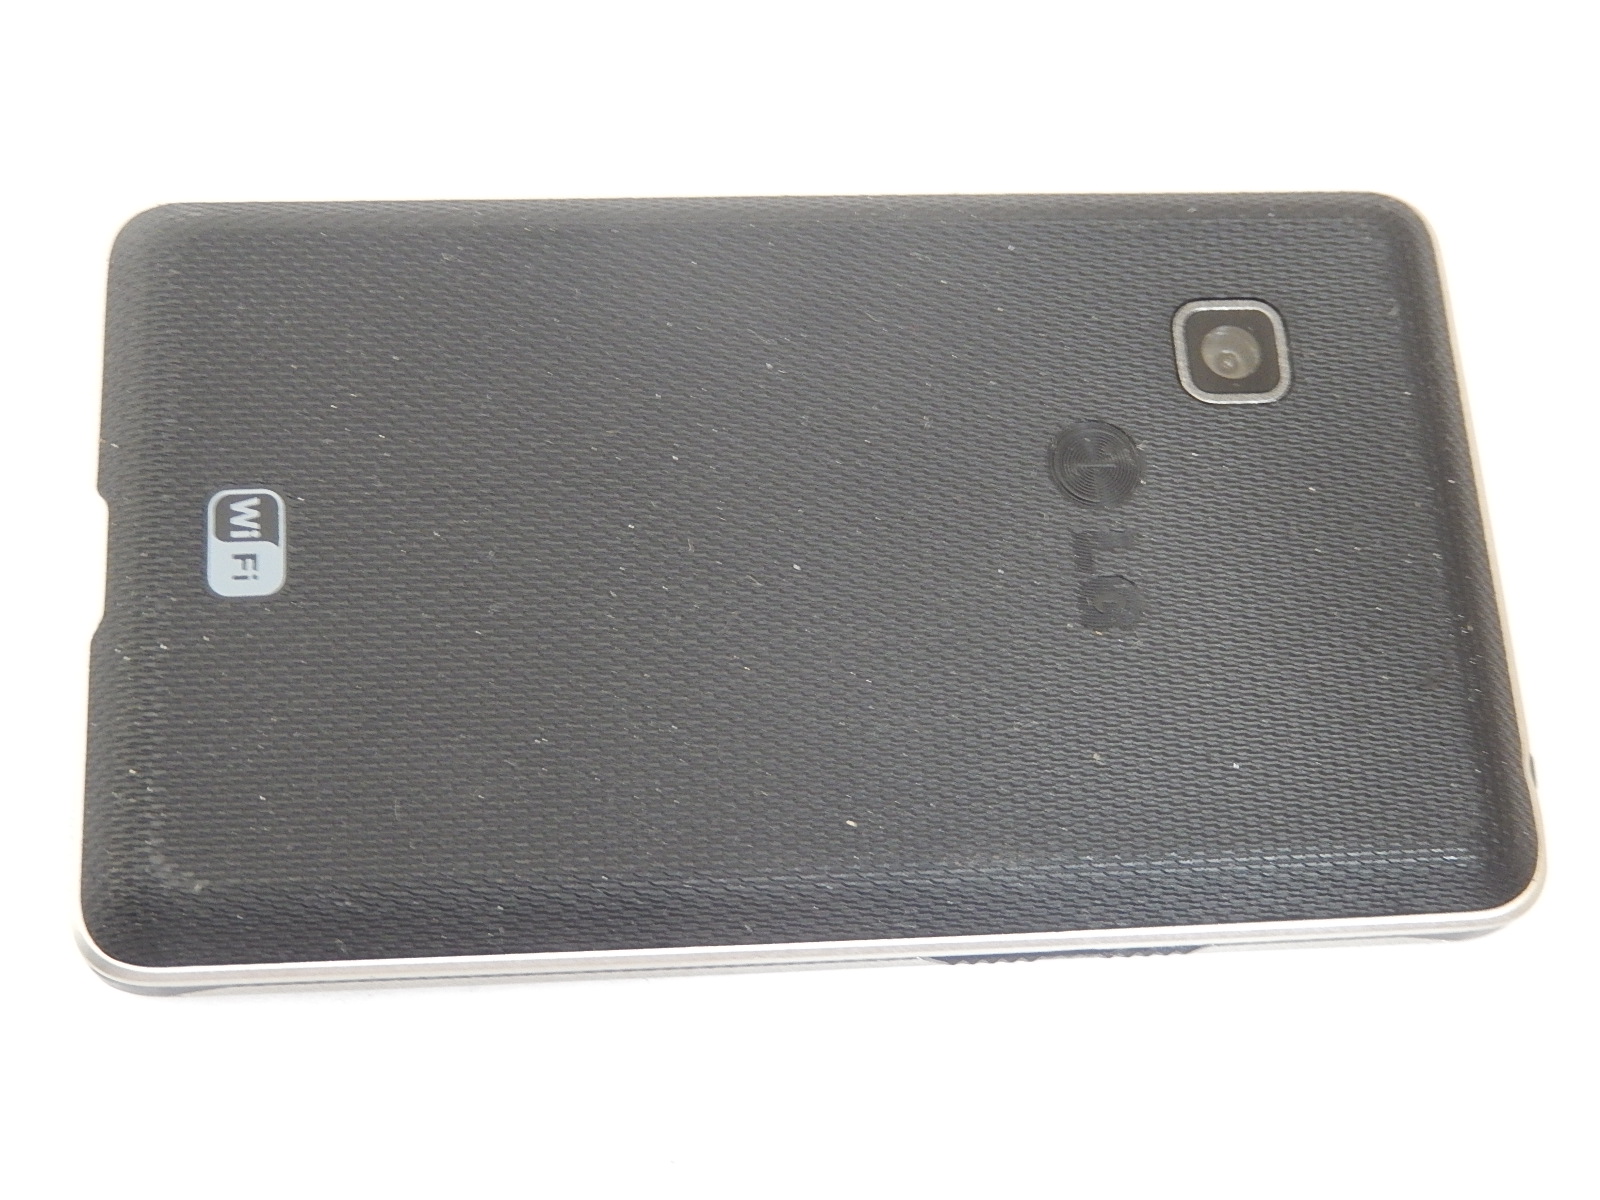 SMARTPHONE FACTICE LG T385  LG-T385